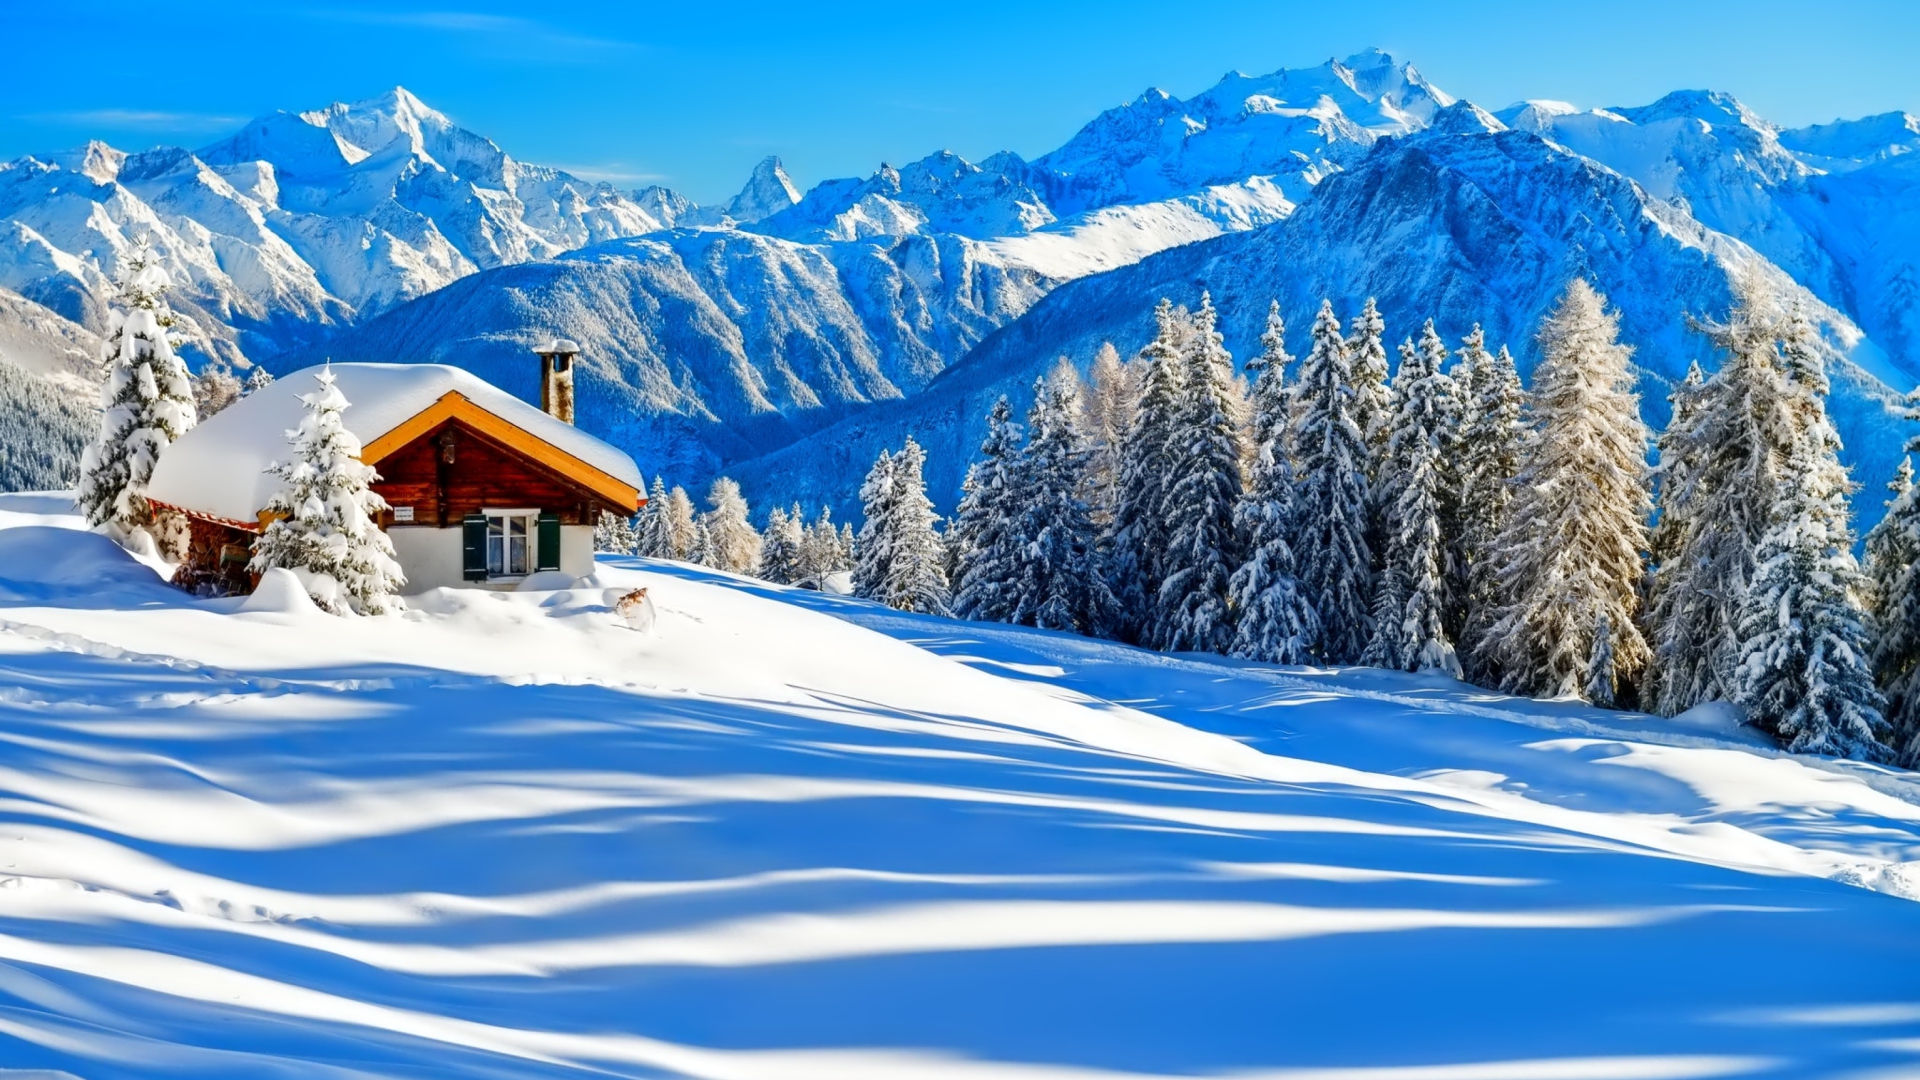 Switzerland Alps in Winter screenshot #1 1920x1080